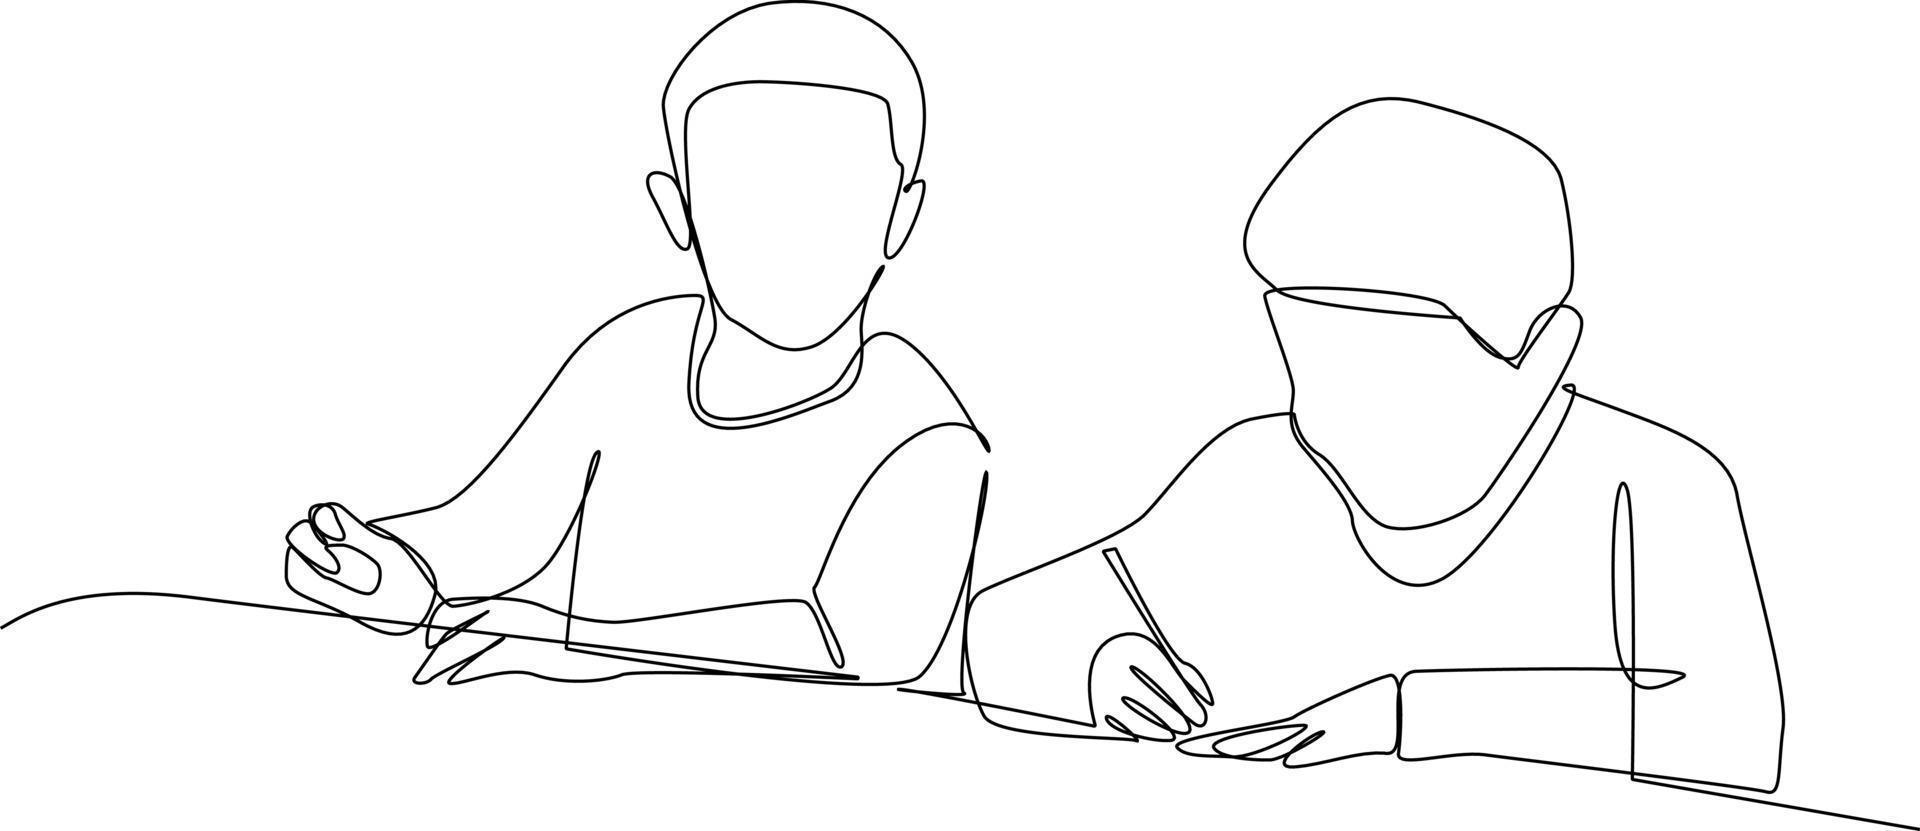 single een lijn tekening een leerling bedrogen Aan zijn vriend. klasse in sessie concept. doorlopend lijn tekening ontwerp grafisch vector illustratie.